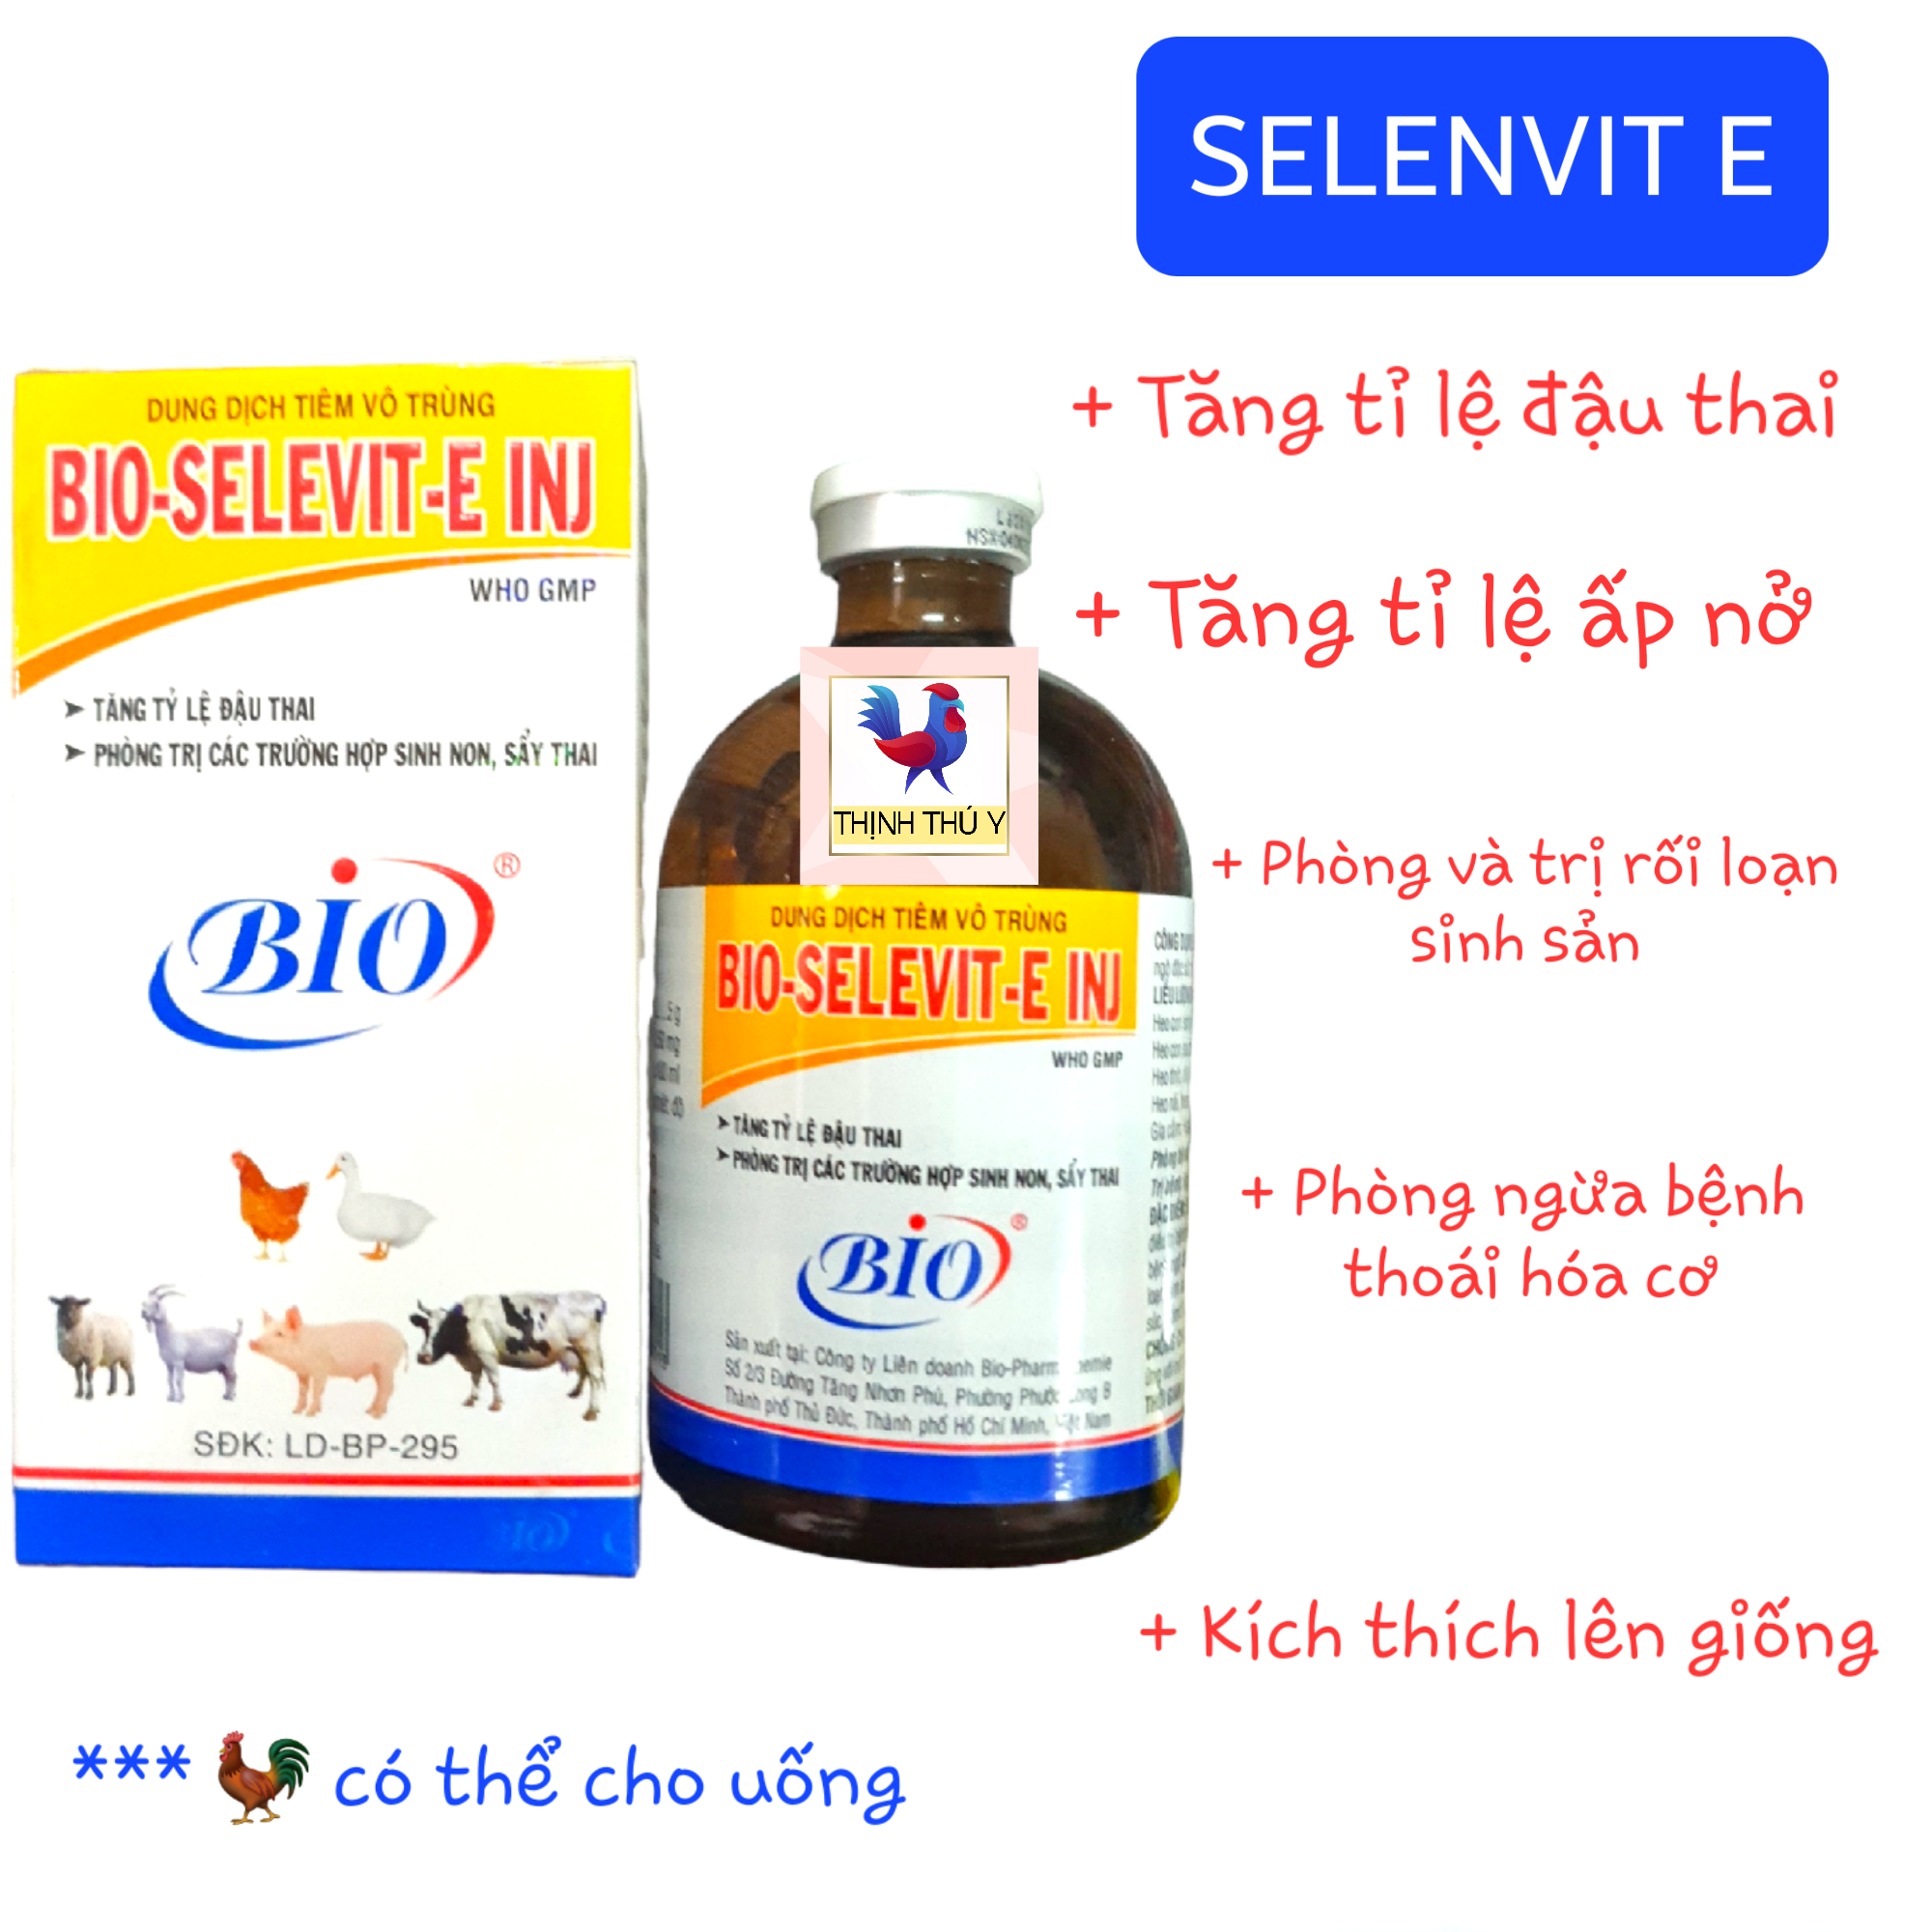 Bio SELENVIT E (100ml) - Cung cấp Selen + Vitamin E. Phòng và trị thoái hóa cơ bại liệt kích thích lên giống cho gà vịt heo bò